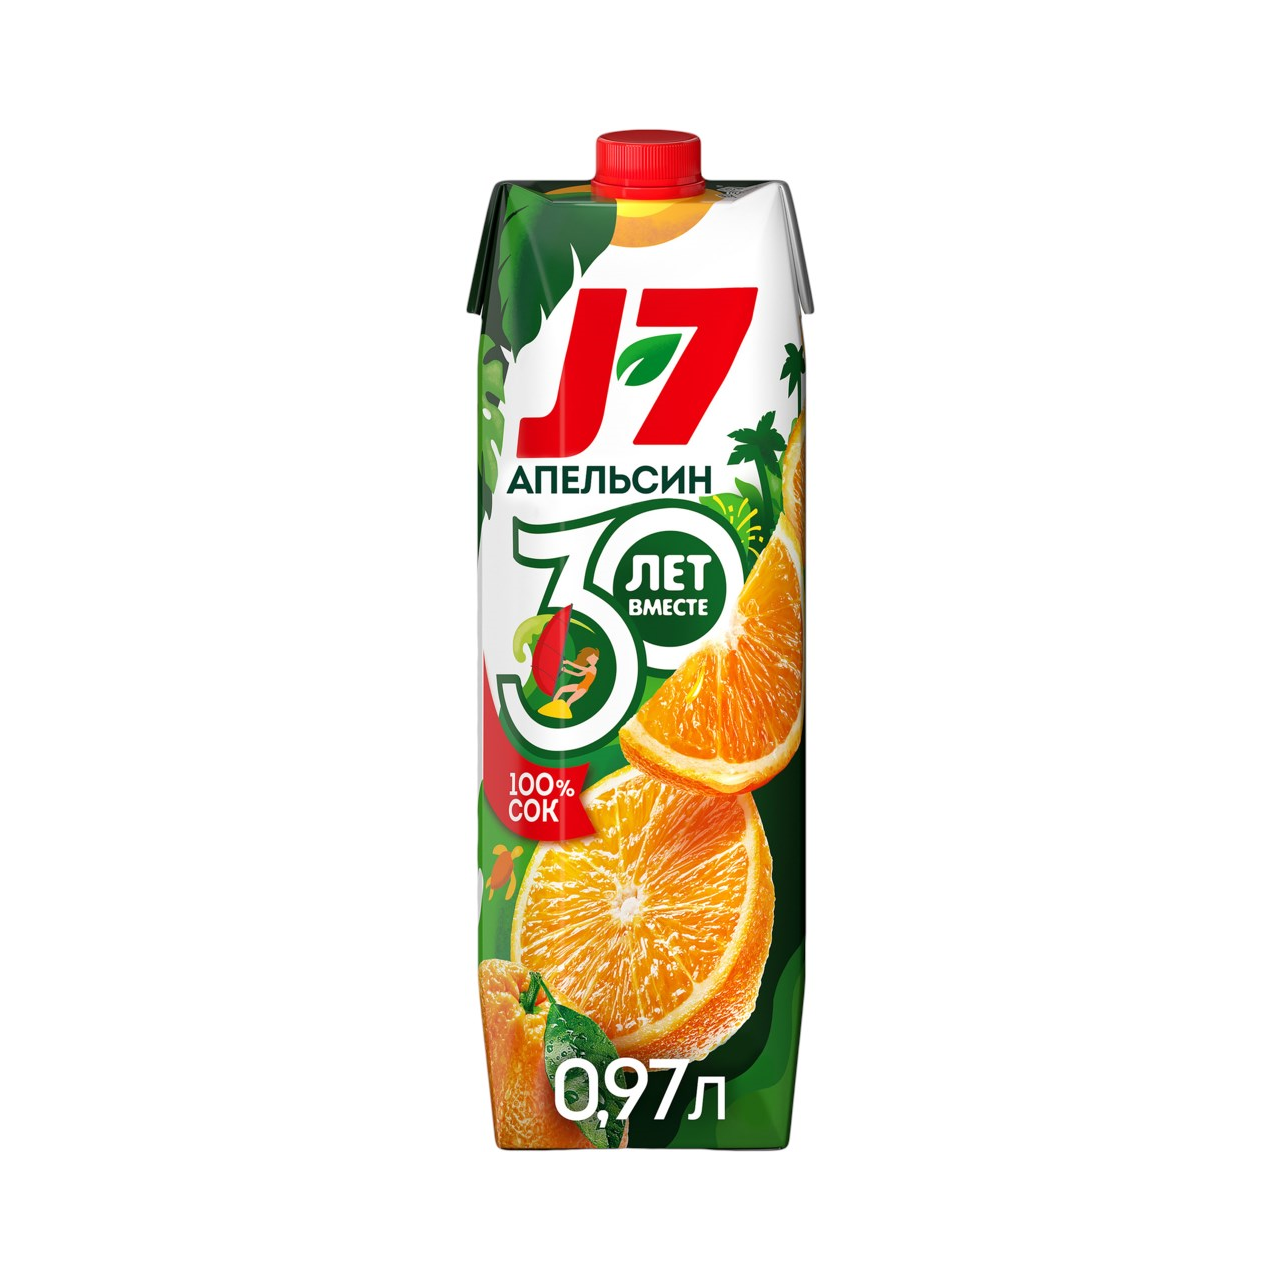 Сок Джей 7 0,97л апельсин